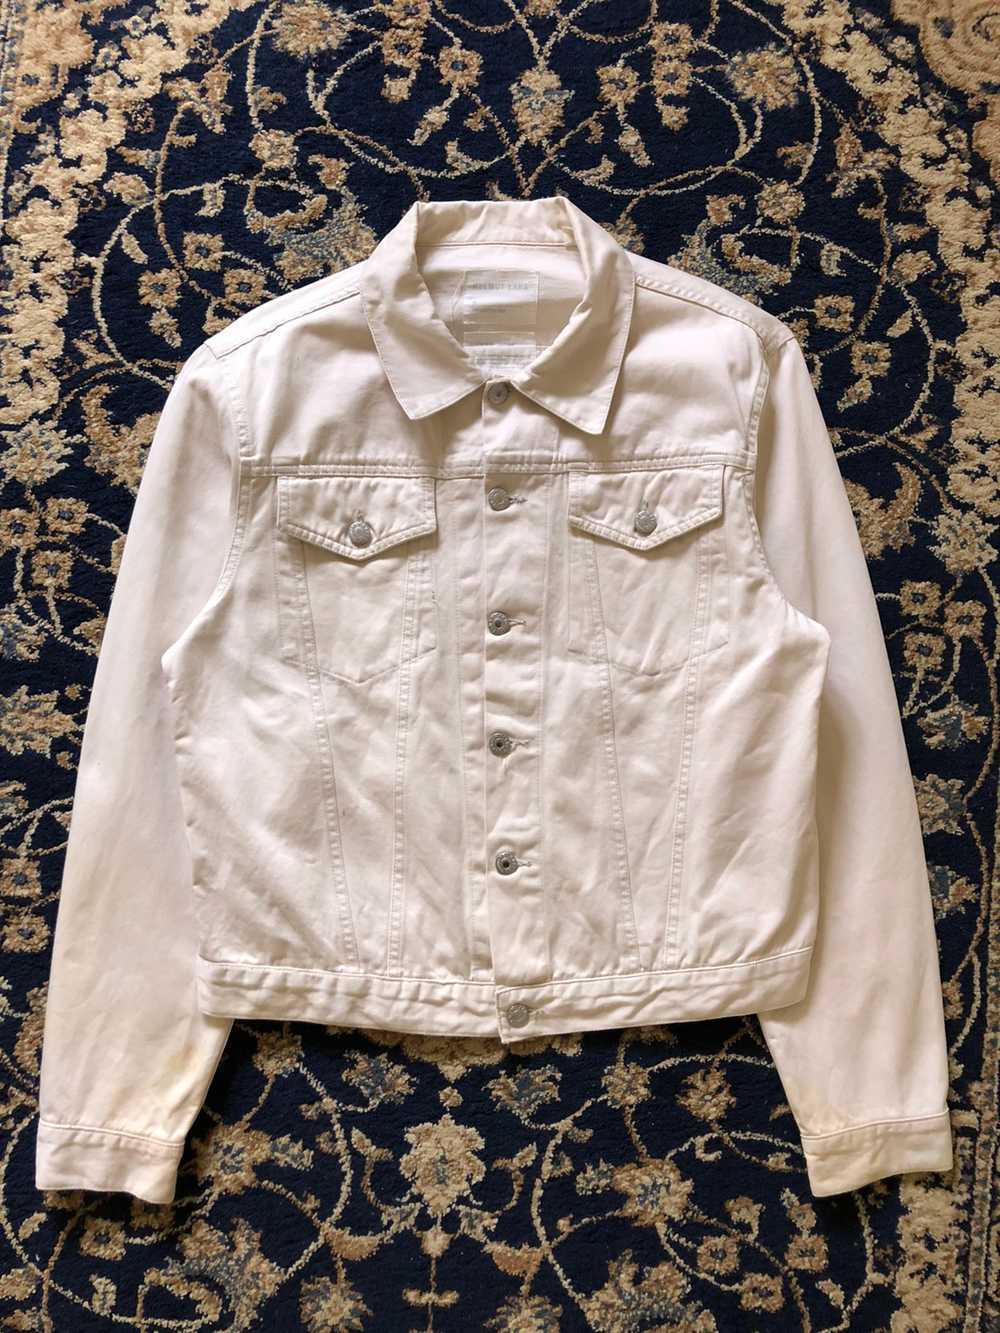 1998 Helmut Lang Off-white Vintage Cotton Jacket - image 4